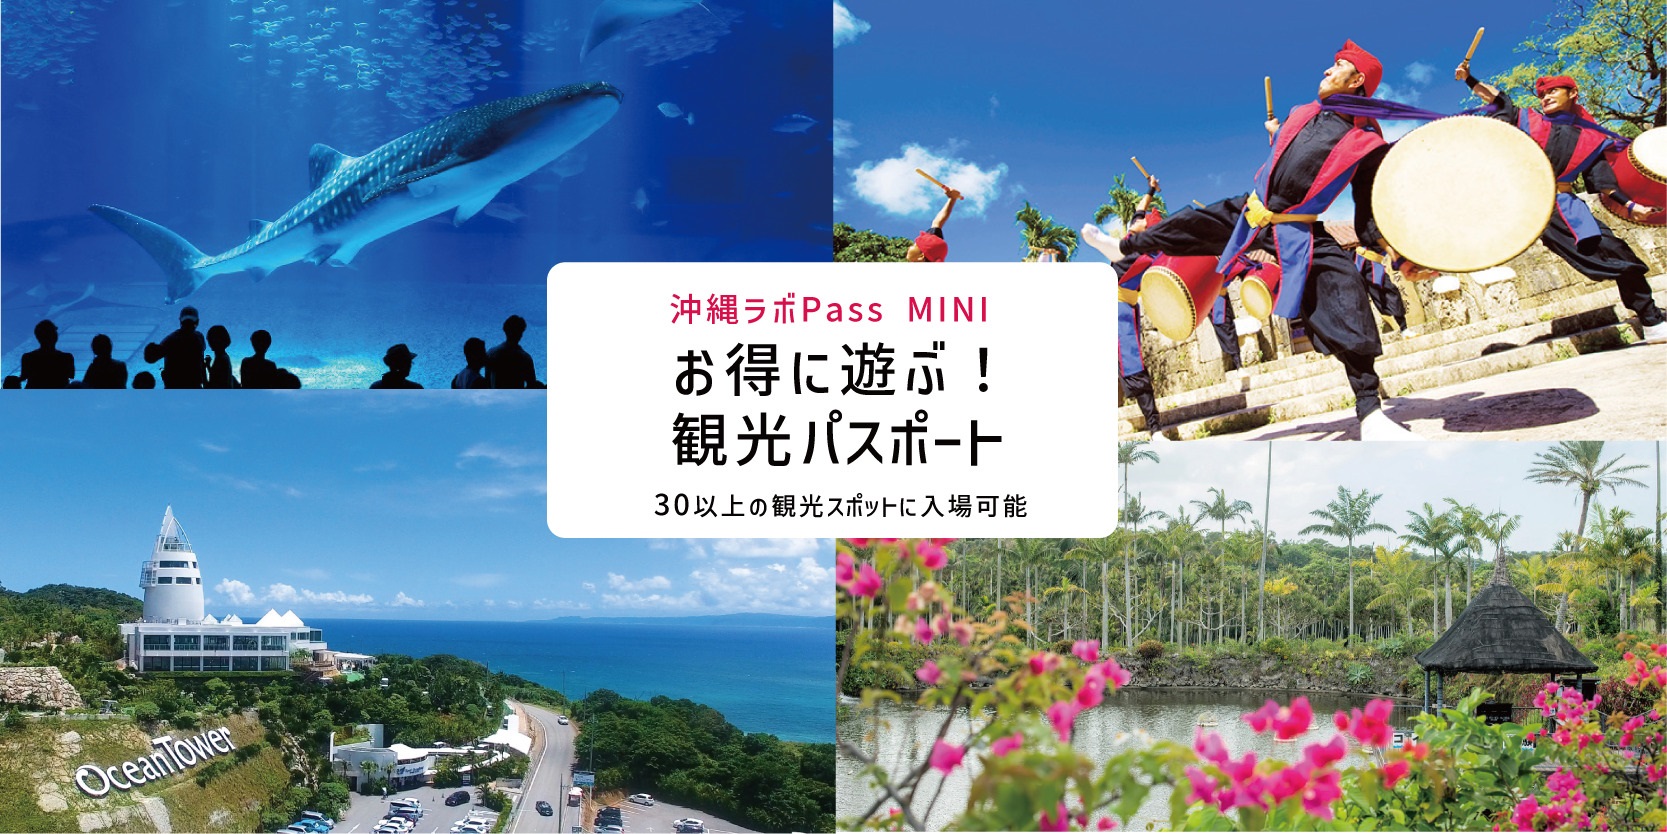 沖縄ラボPass MINI 観光スポットへの入場パス